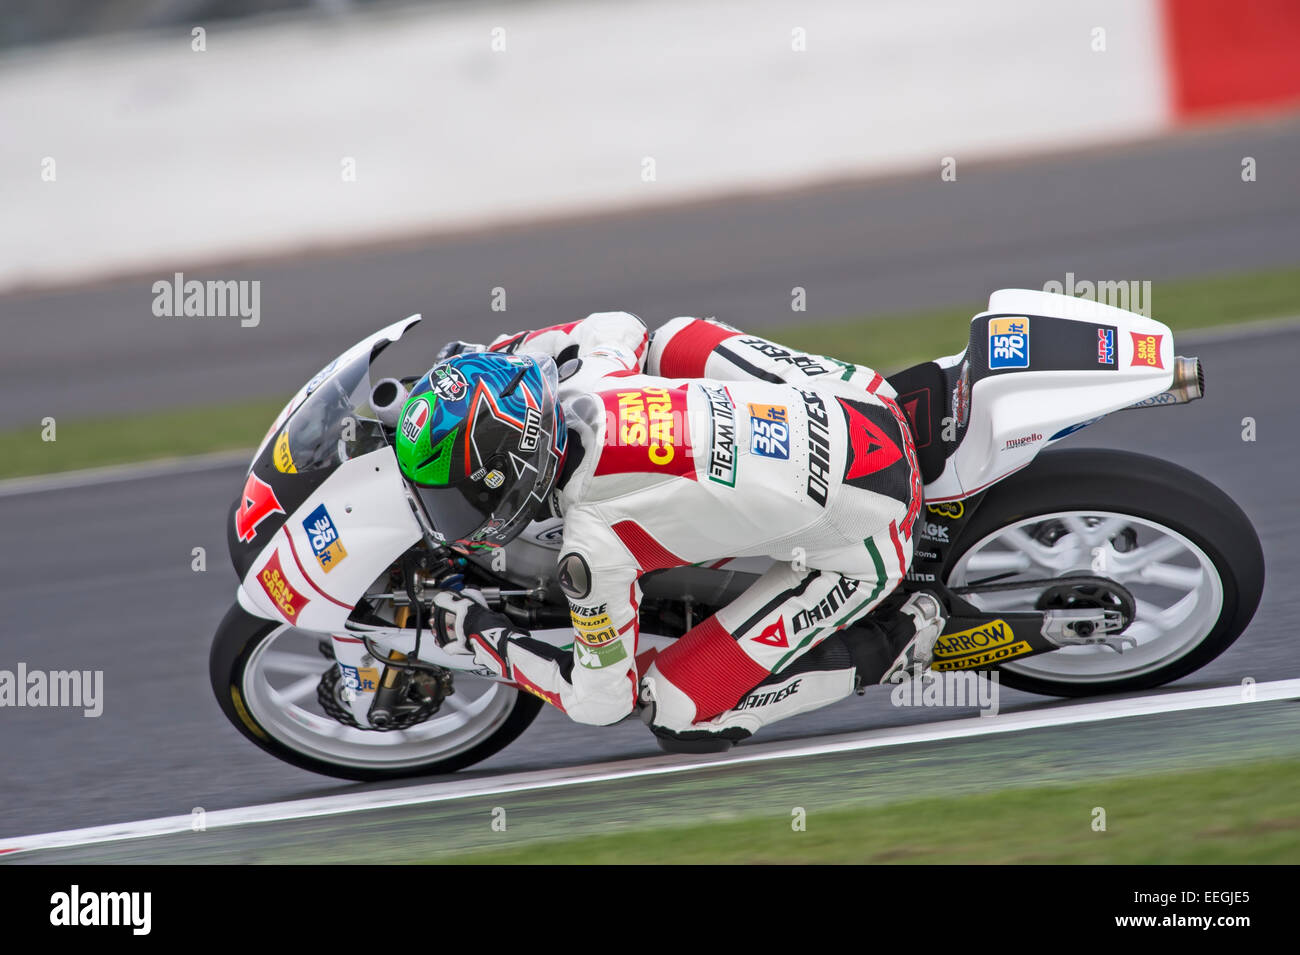 Francesco Bagnaia Racing eine Moto3 Bike, 2013 Stockfoto